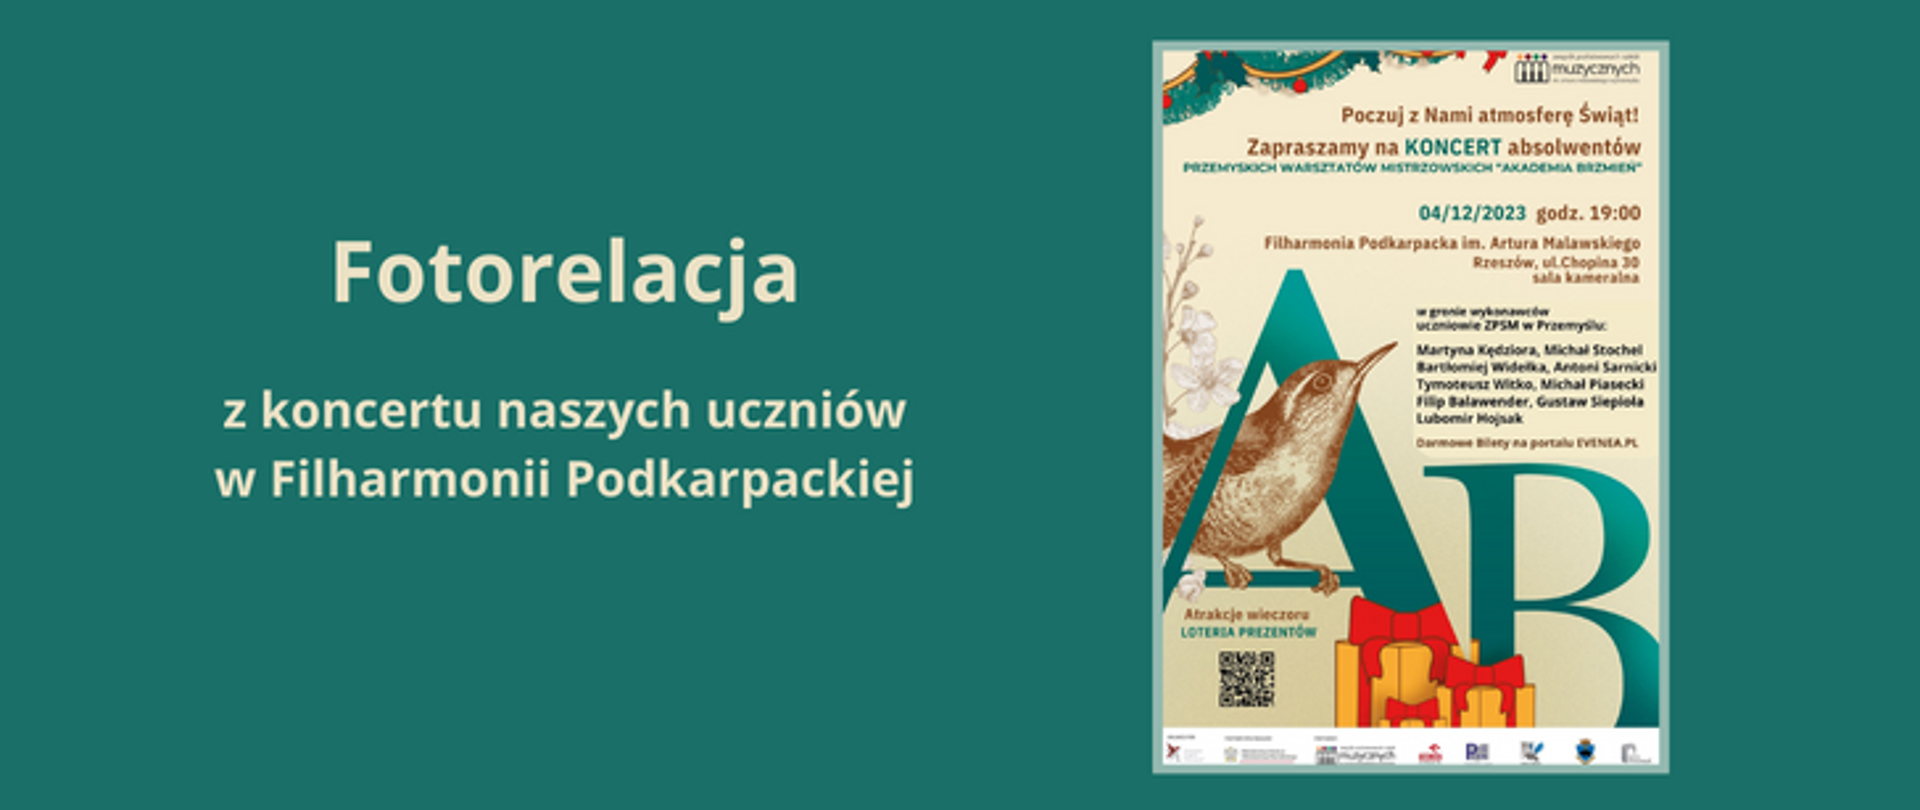 Na zielonym tle z lewej strony widnieje napis: Fotorelacja z koncertu naszych uczniów w Filharmonii Podkarpackiej. Z lewej strony umieszczony jest plakat koncertu.